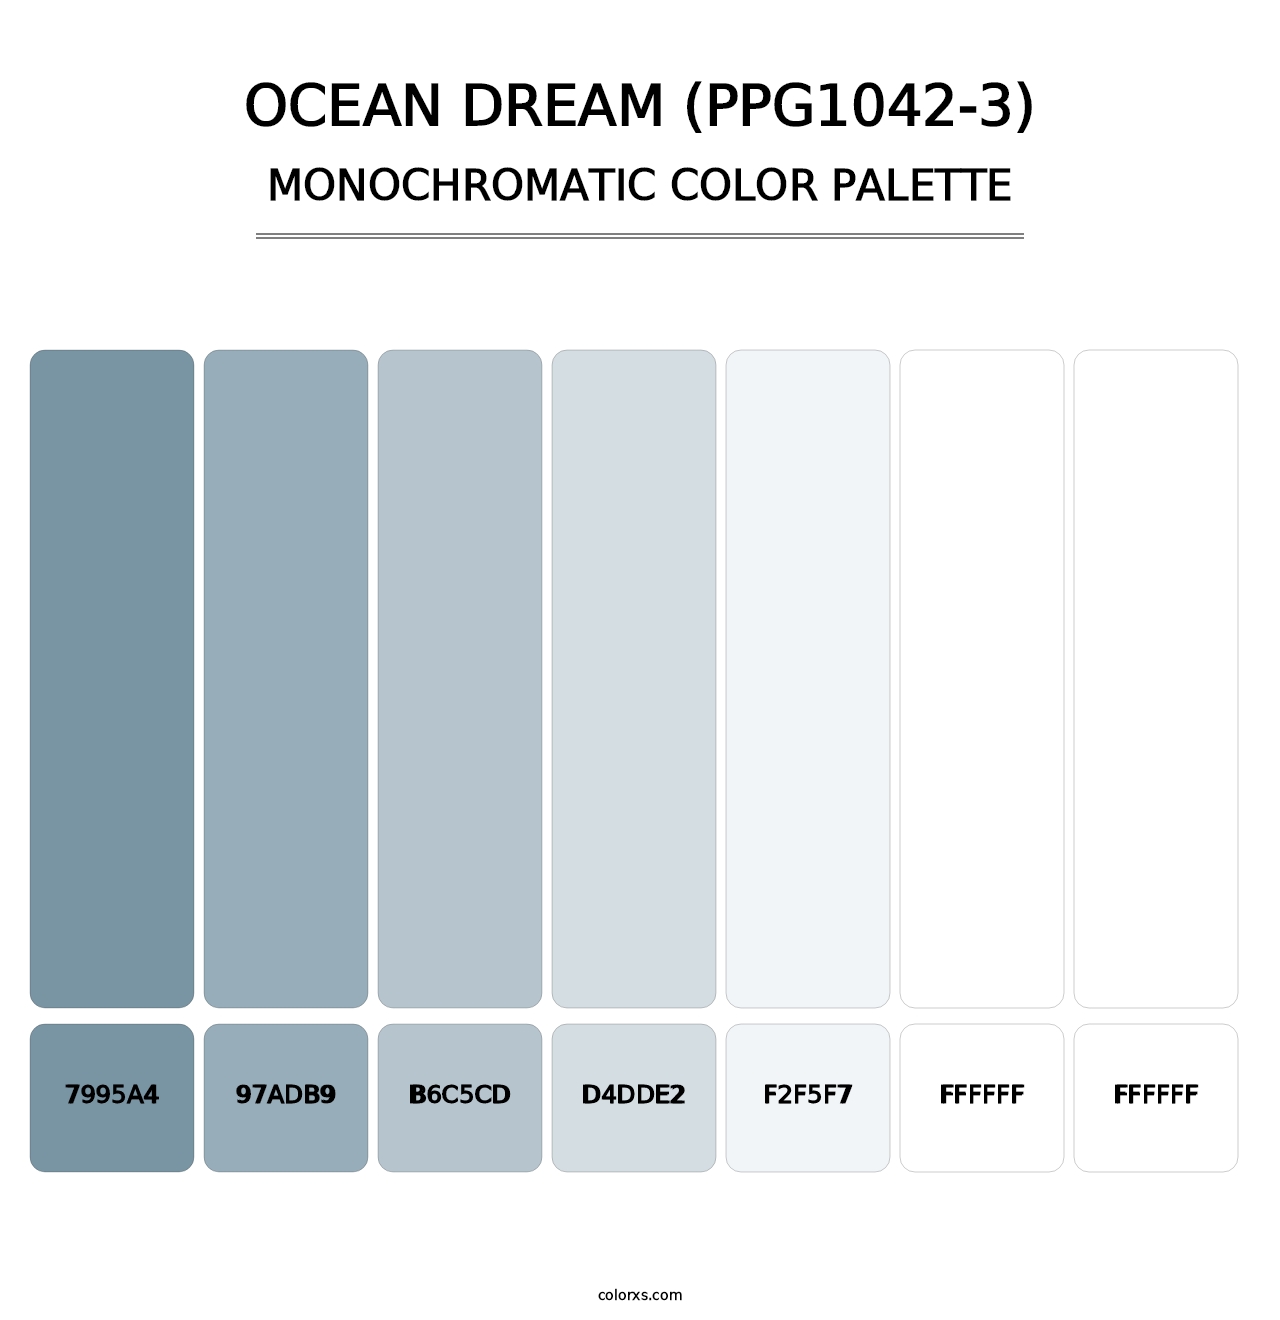 Ocean Dream (PPG1042-3) - Monochromatic Color Palette